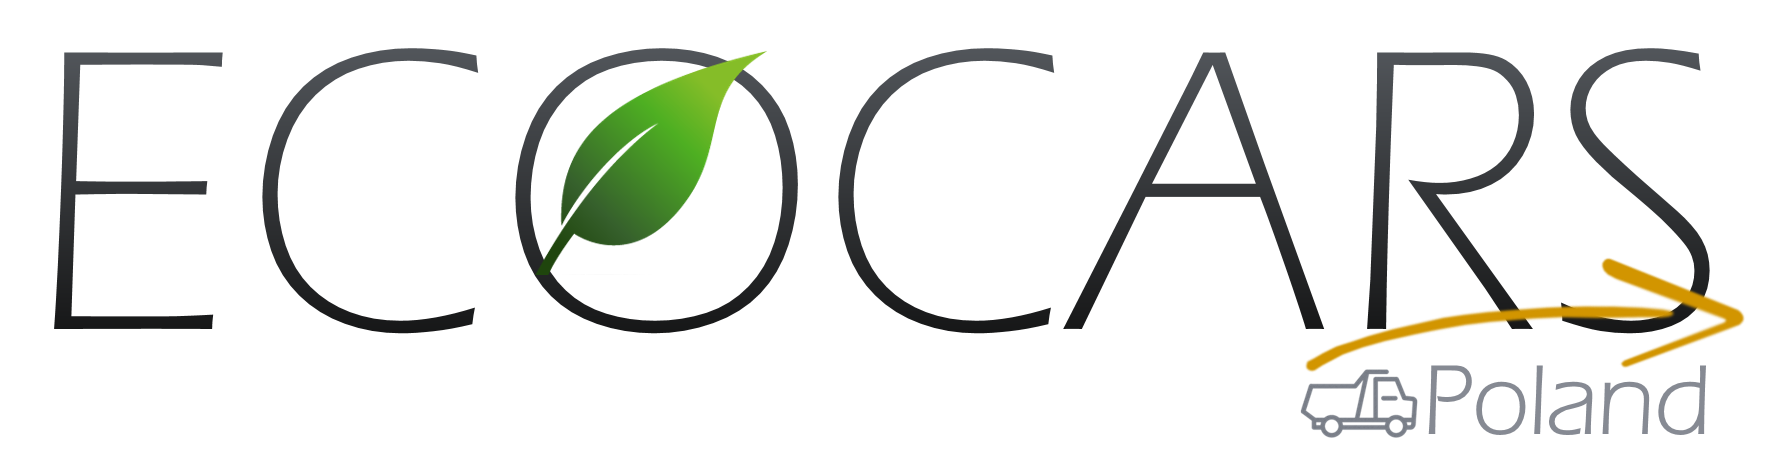 cropped logotyp Ecocars Poland - Długa guma ssawy